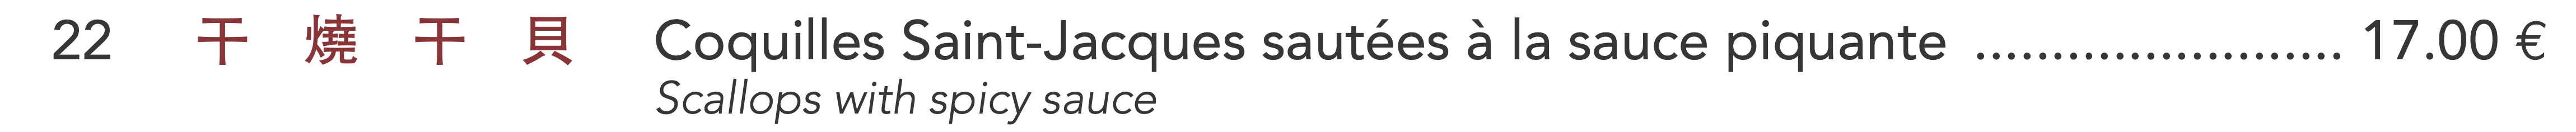 22 - Coquilles Saint-Jacques sautées à la sauce piquante